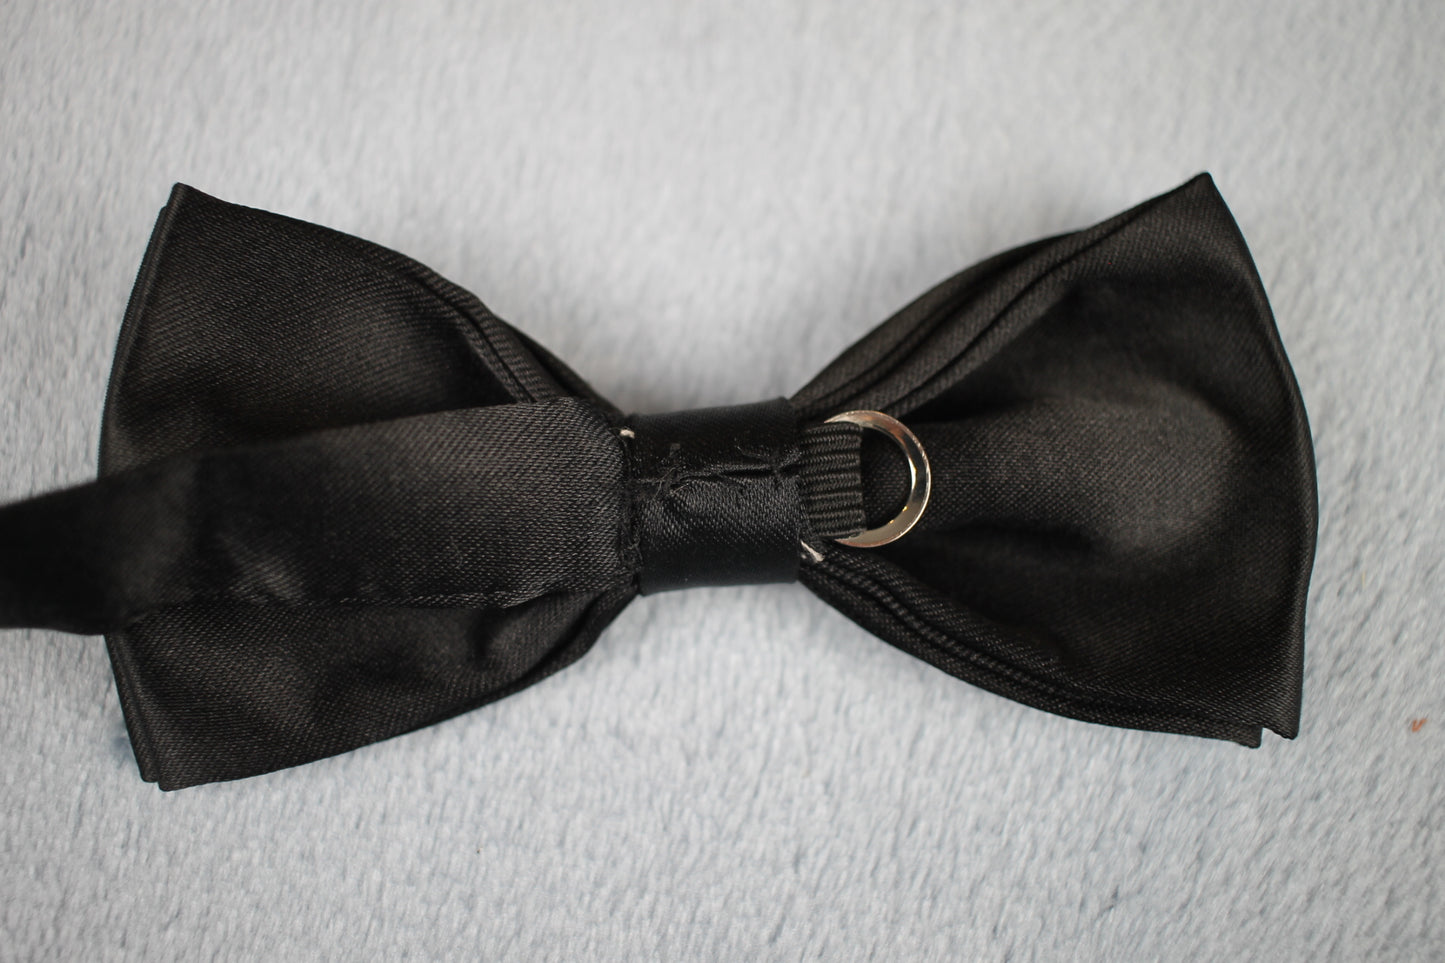 Vintage pre-tied black satin 1970s bow tie adjustable